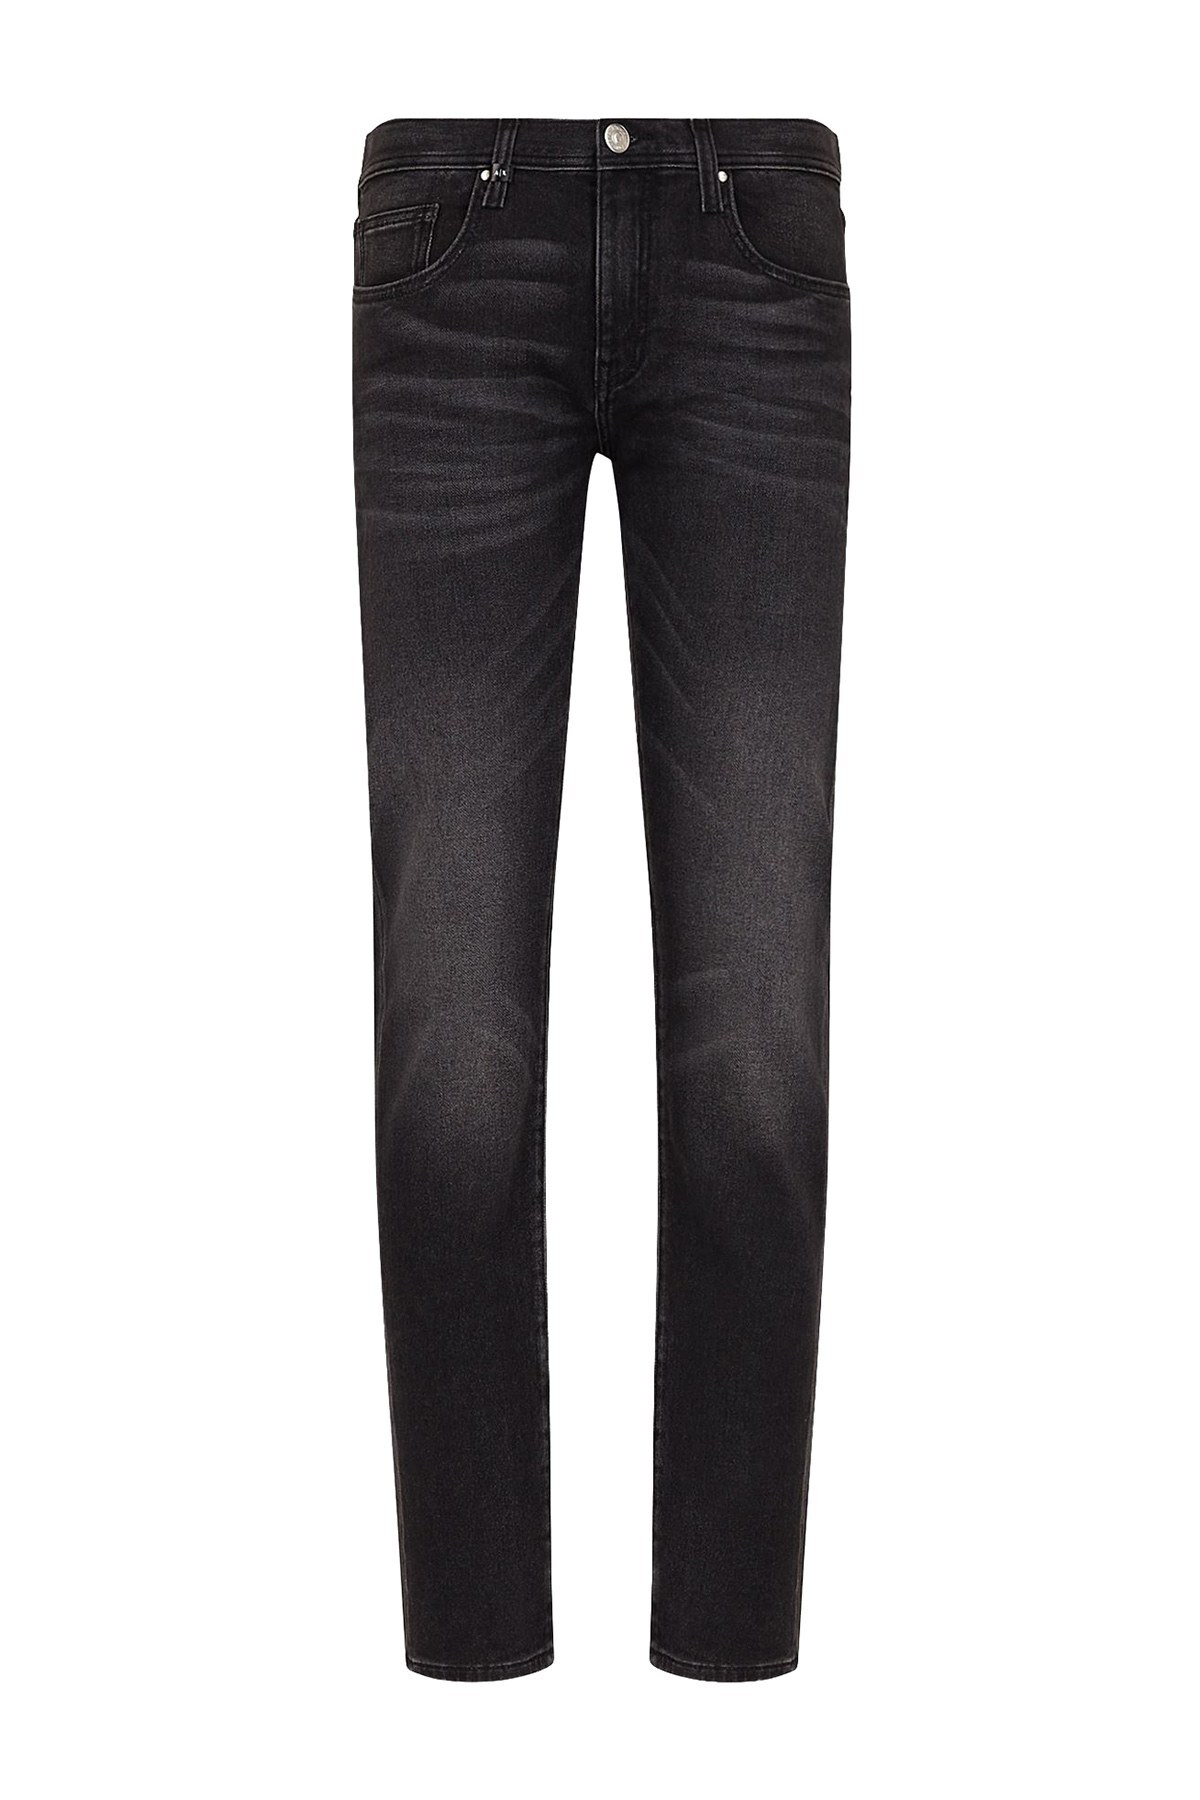 Armani Exchange Pamuklu Slim Fit J13 Jeans Erkek Kot Pantolon 3KZJ13 Z1ETZ 0903 GRİ